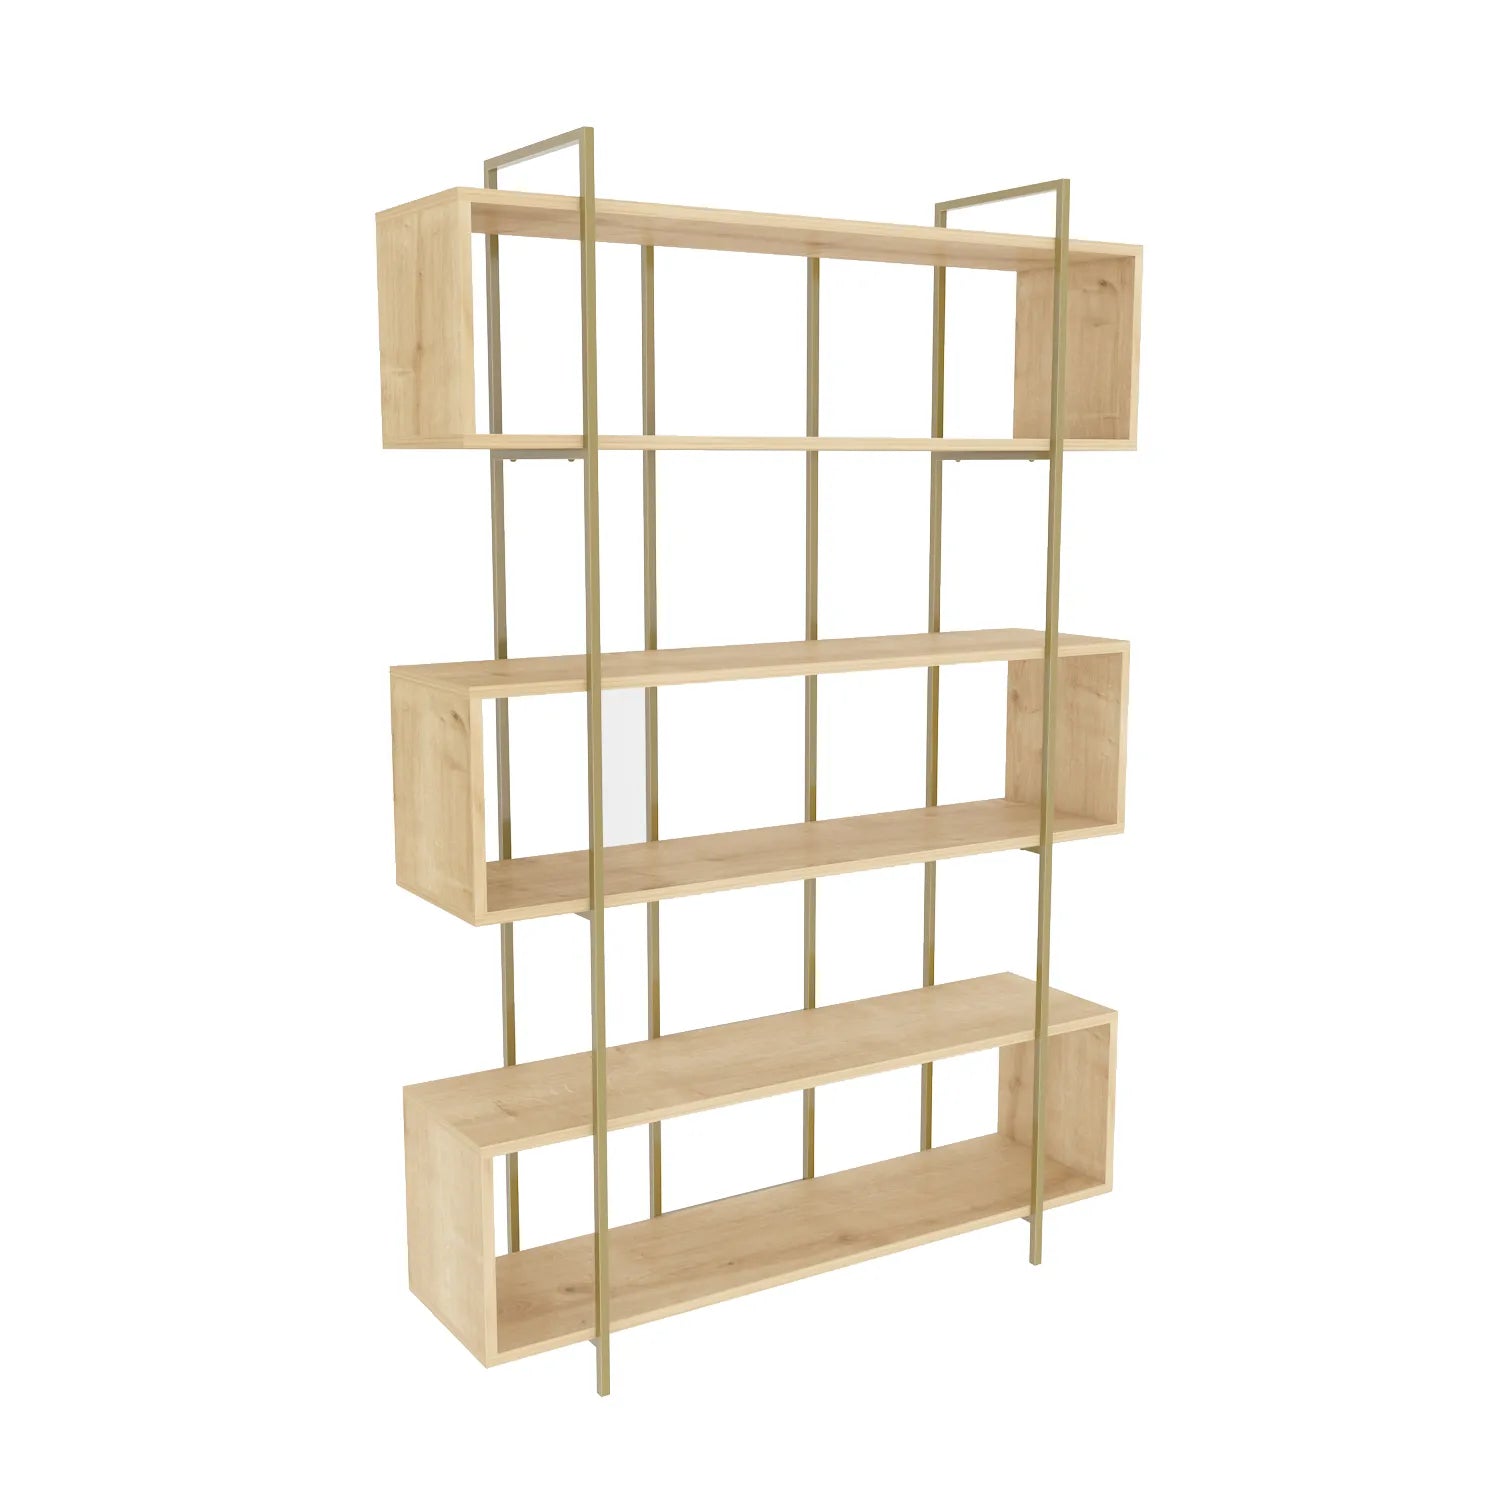 Bruti 71" Tall Geometric Metal Wood Bookcase | Bookshelf | Display Unit